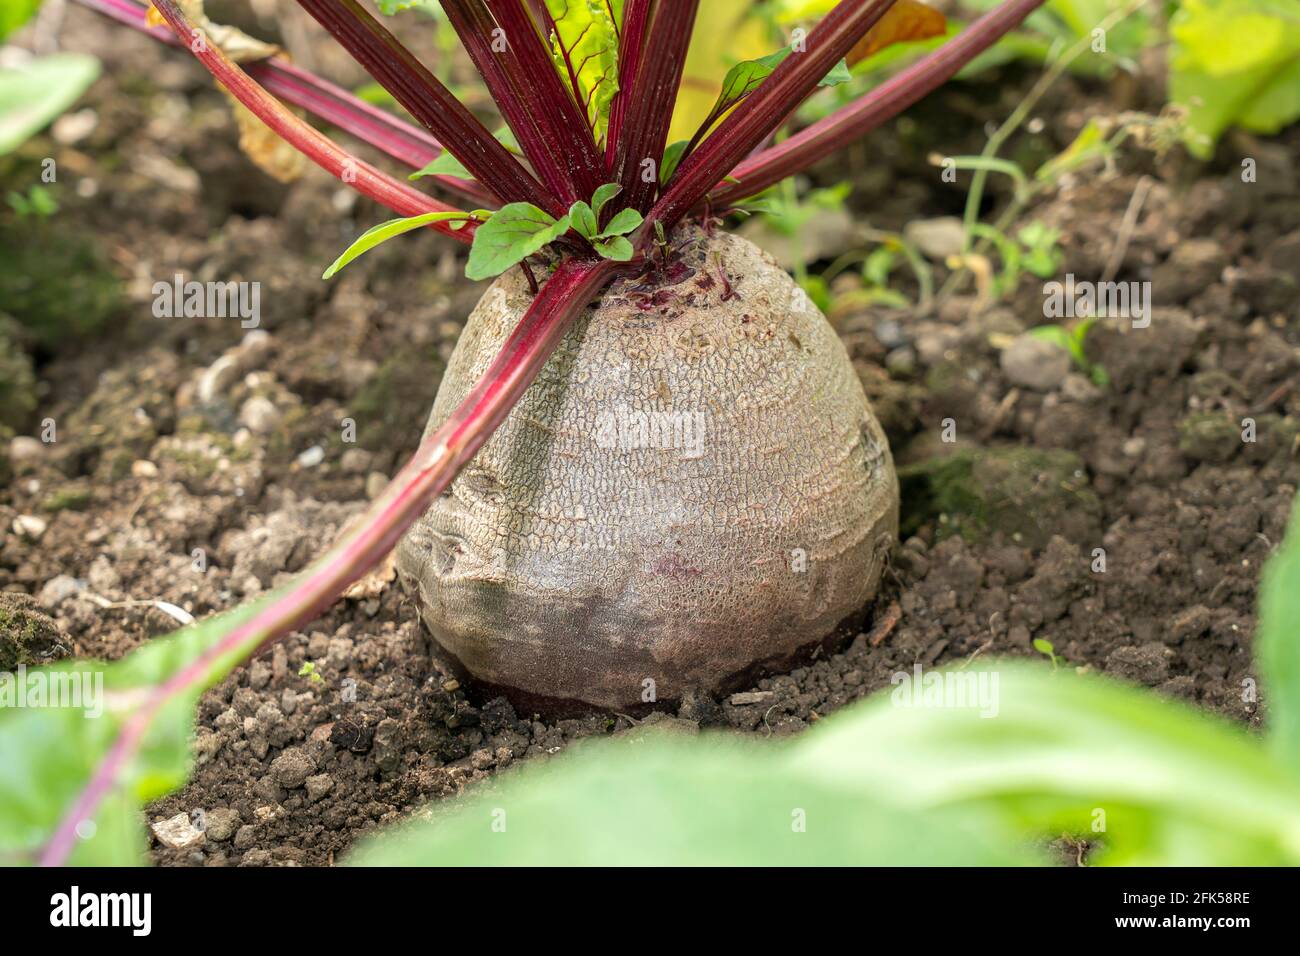 Gemüsegarten - Rote Beete (Beta vulgaris) Foto Stock